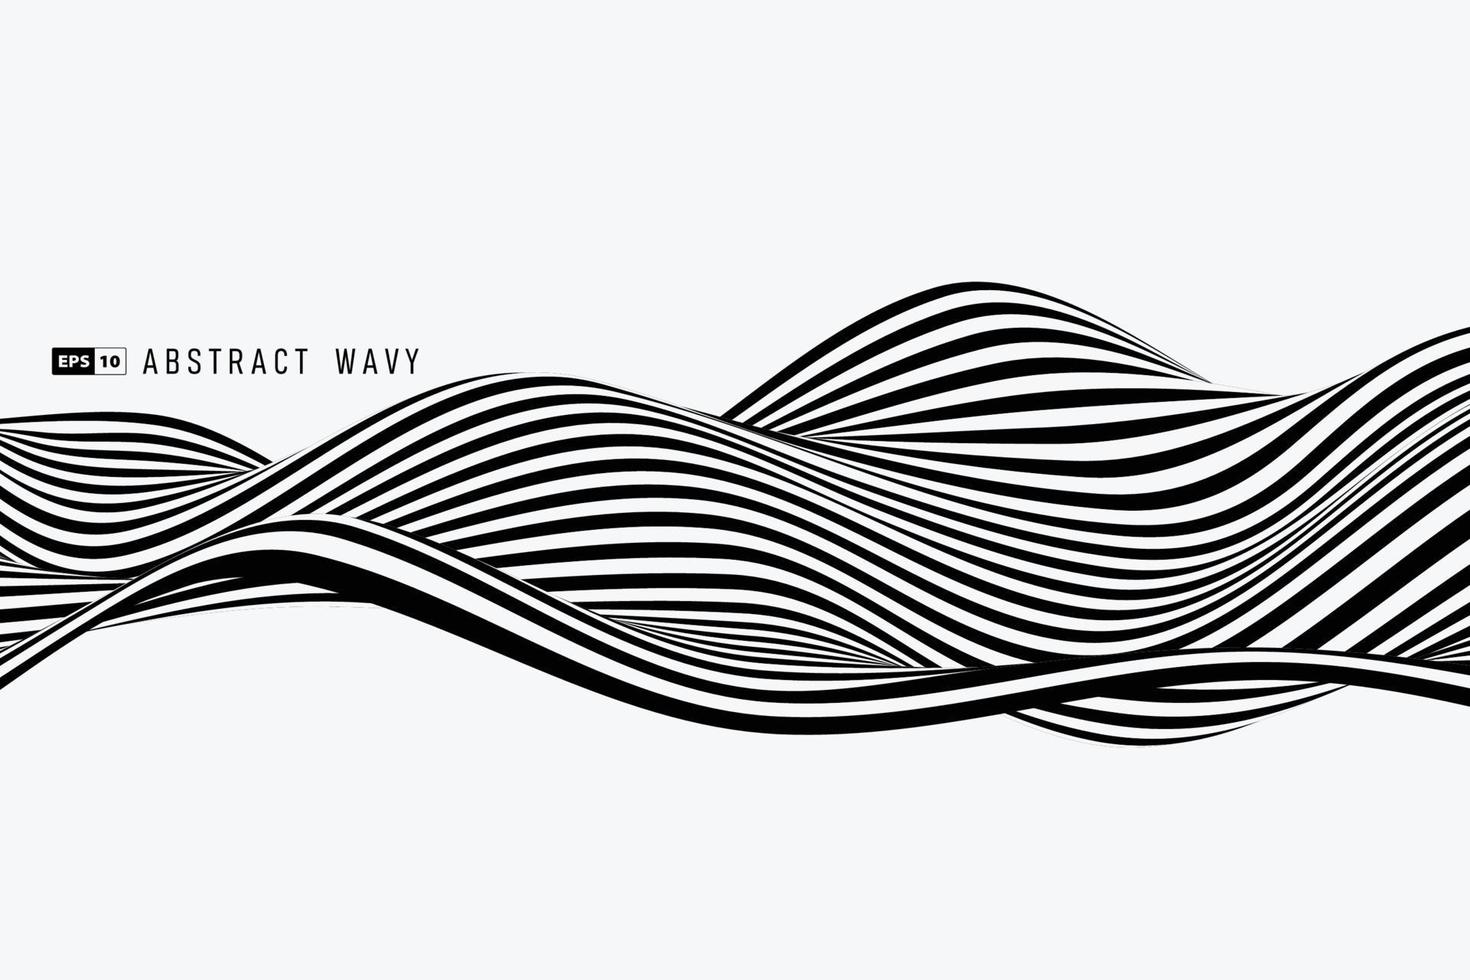 abstrakt svartvit randlinje vågigt mönsterelement täcker bakgrund. illustration vektor eps10